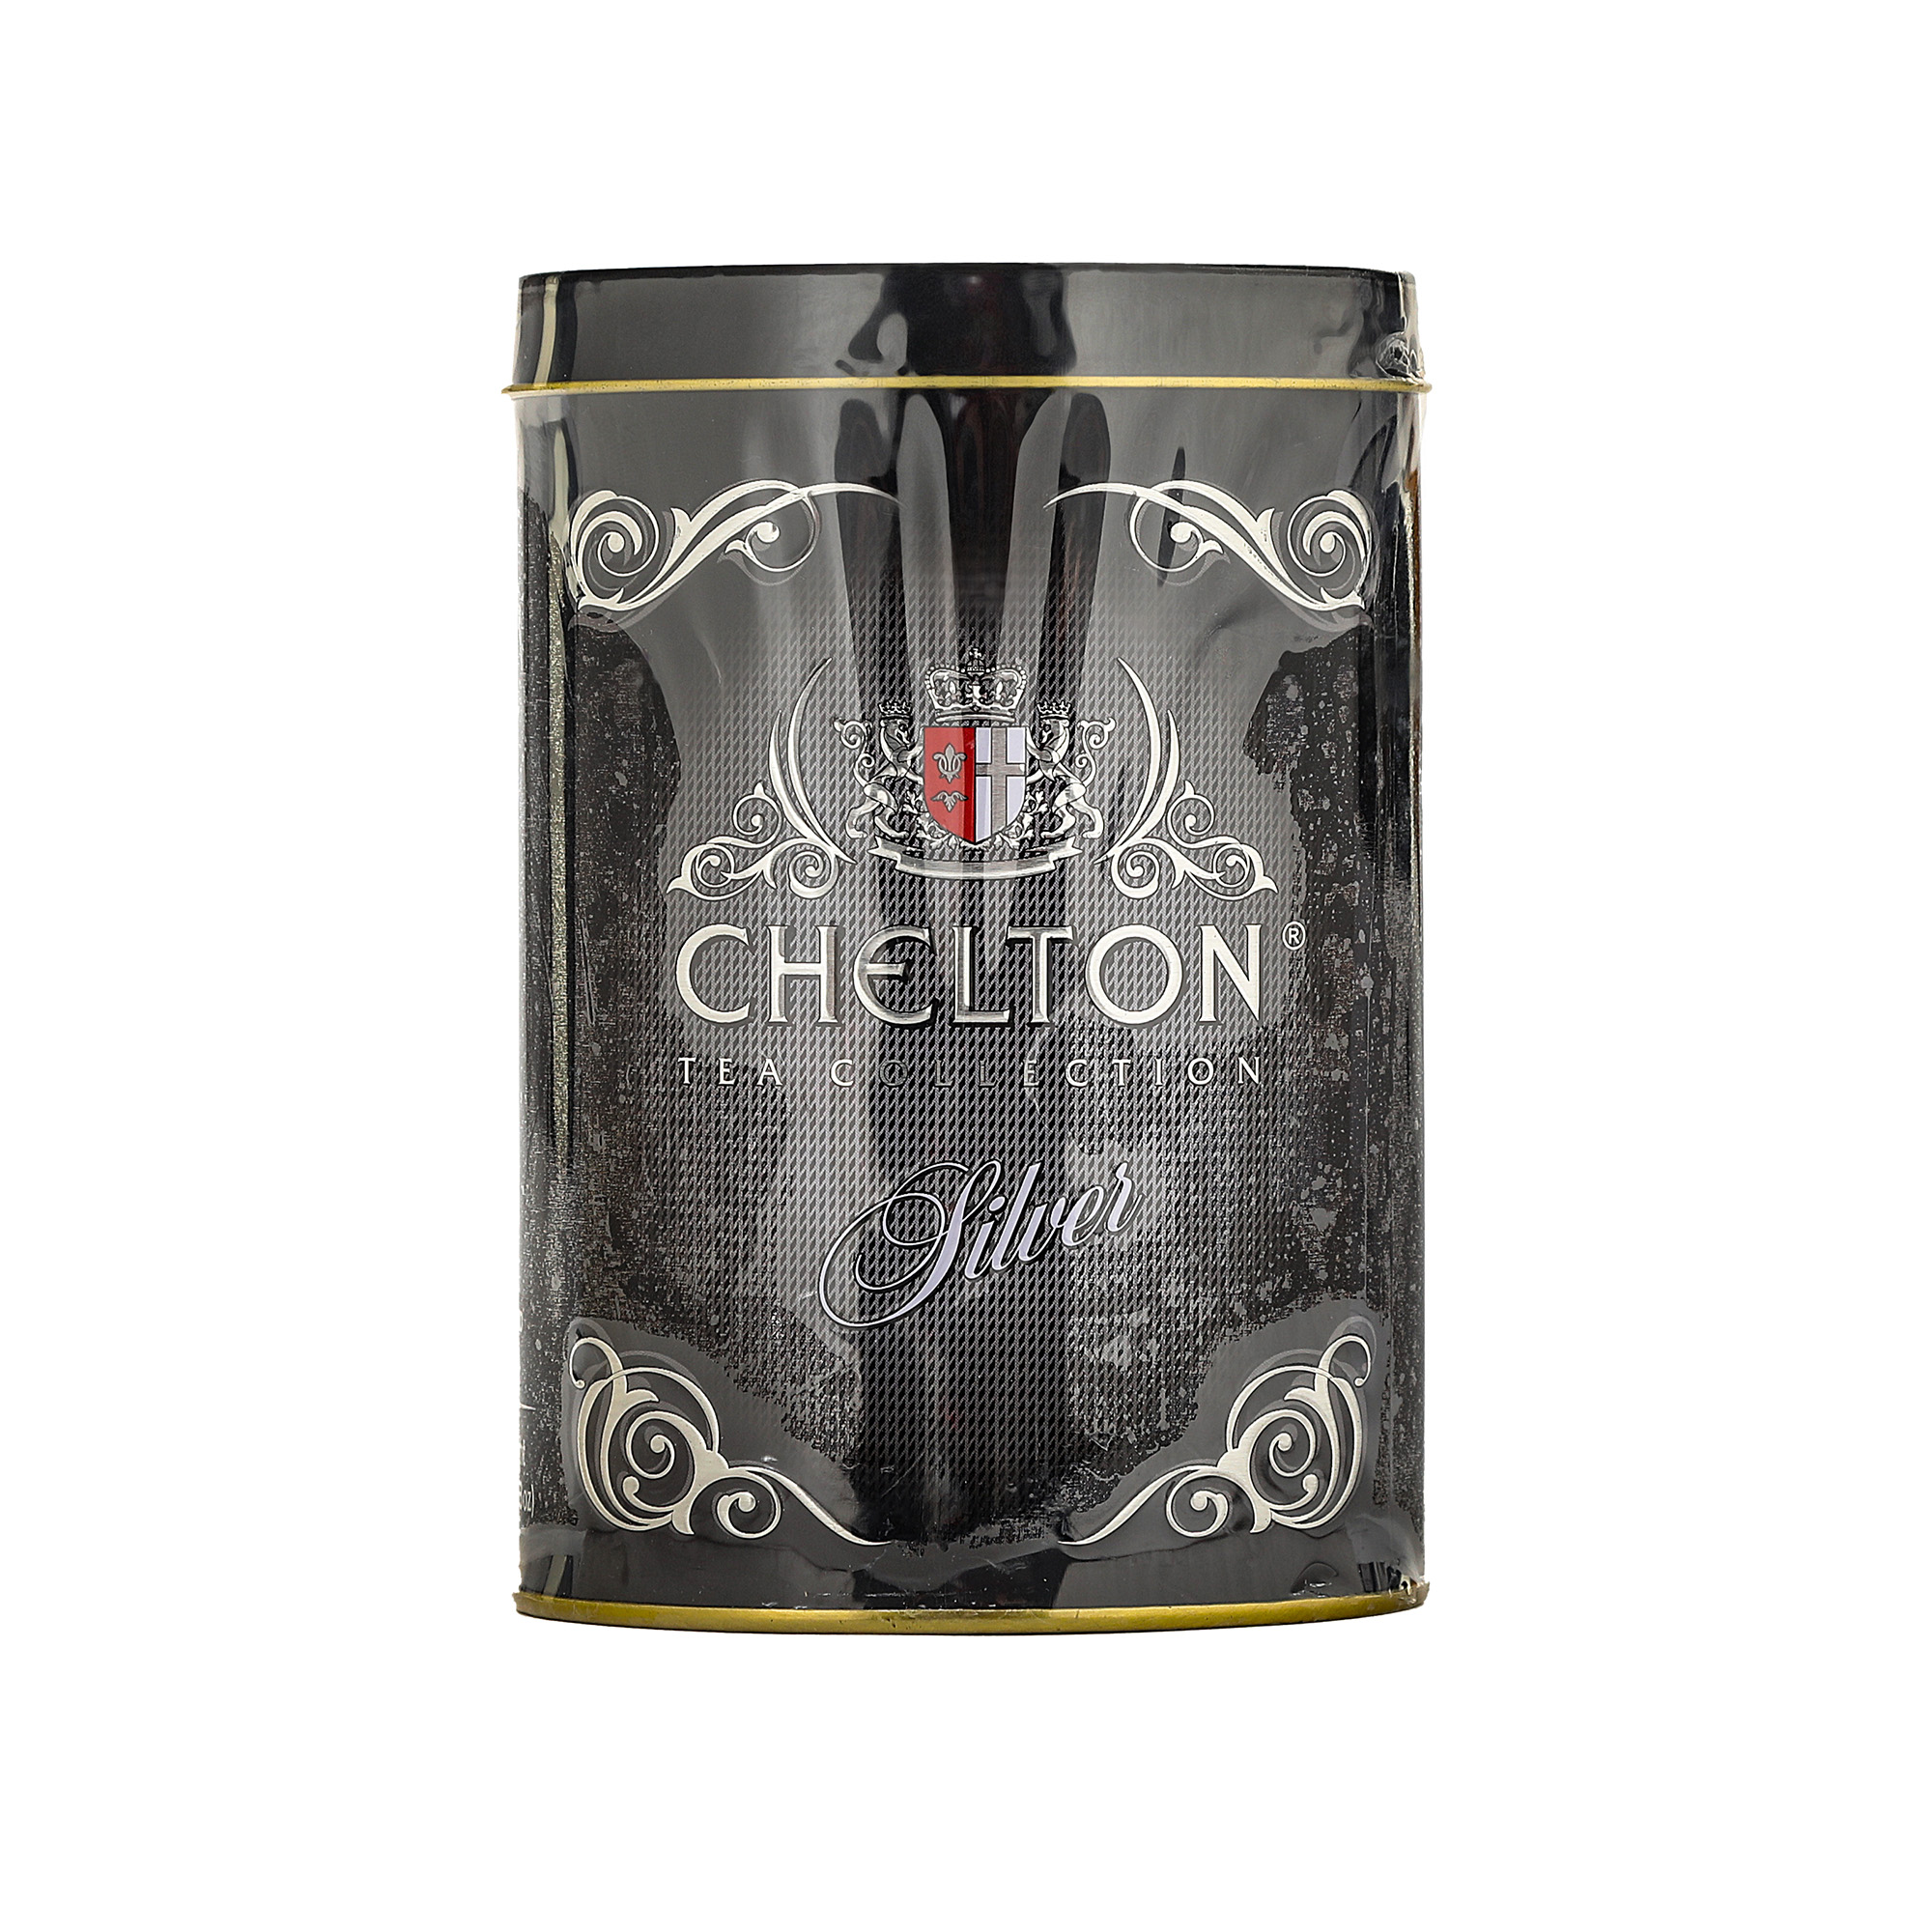 Чай Chelton Отборный среднелистовой, 100 г чай chelton нежный тюльпан жестяная банка 80 г